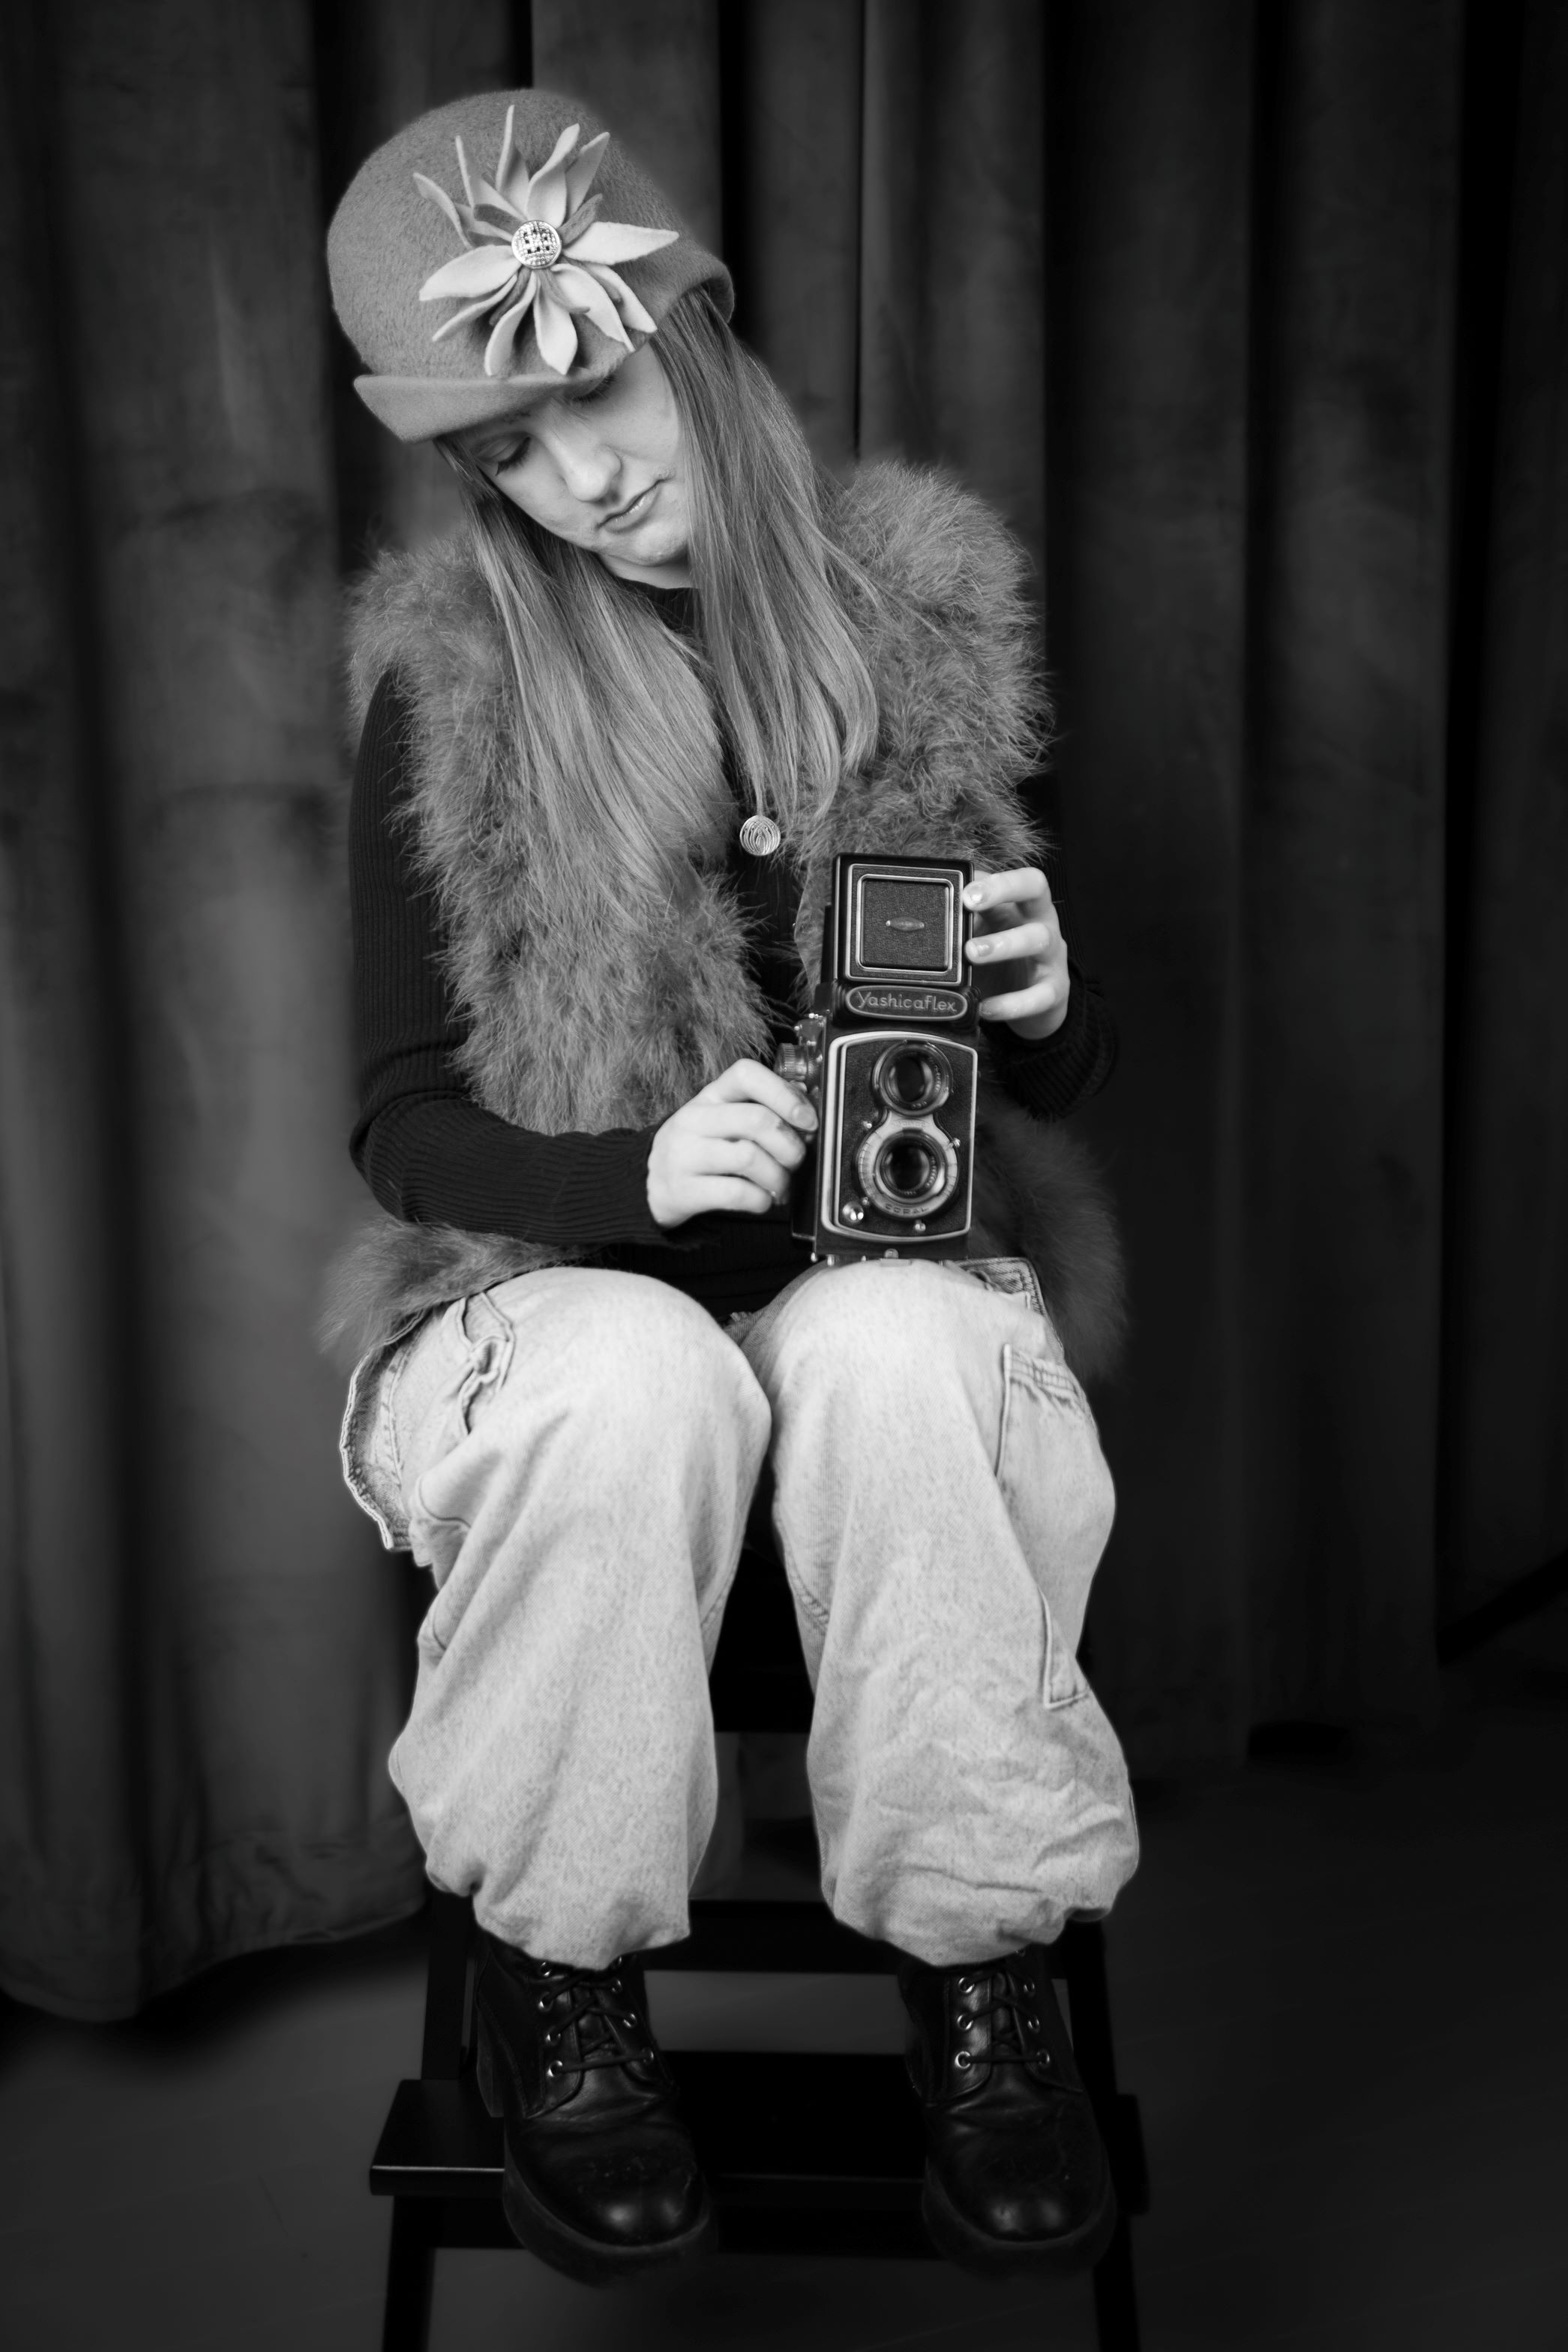 Laura ja vanha kamera.jpg